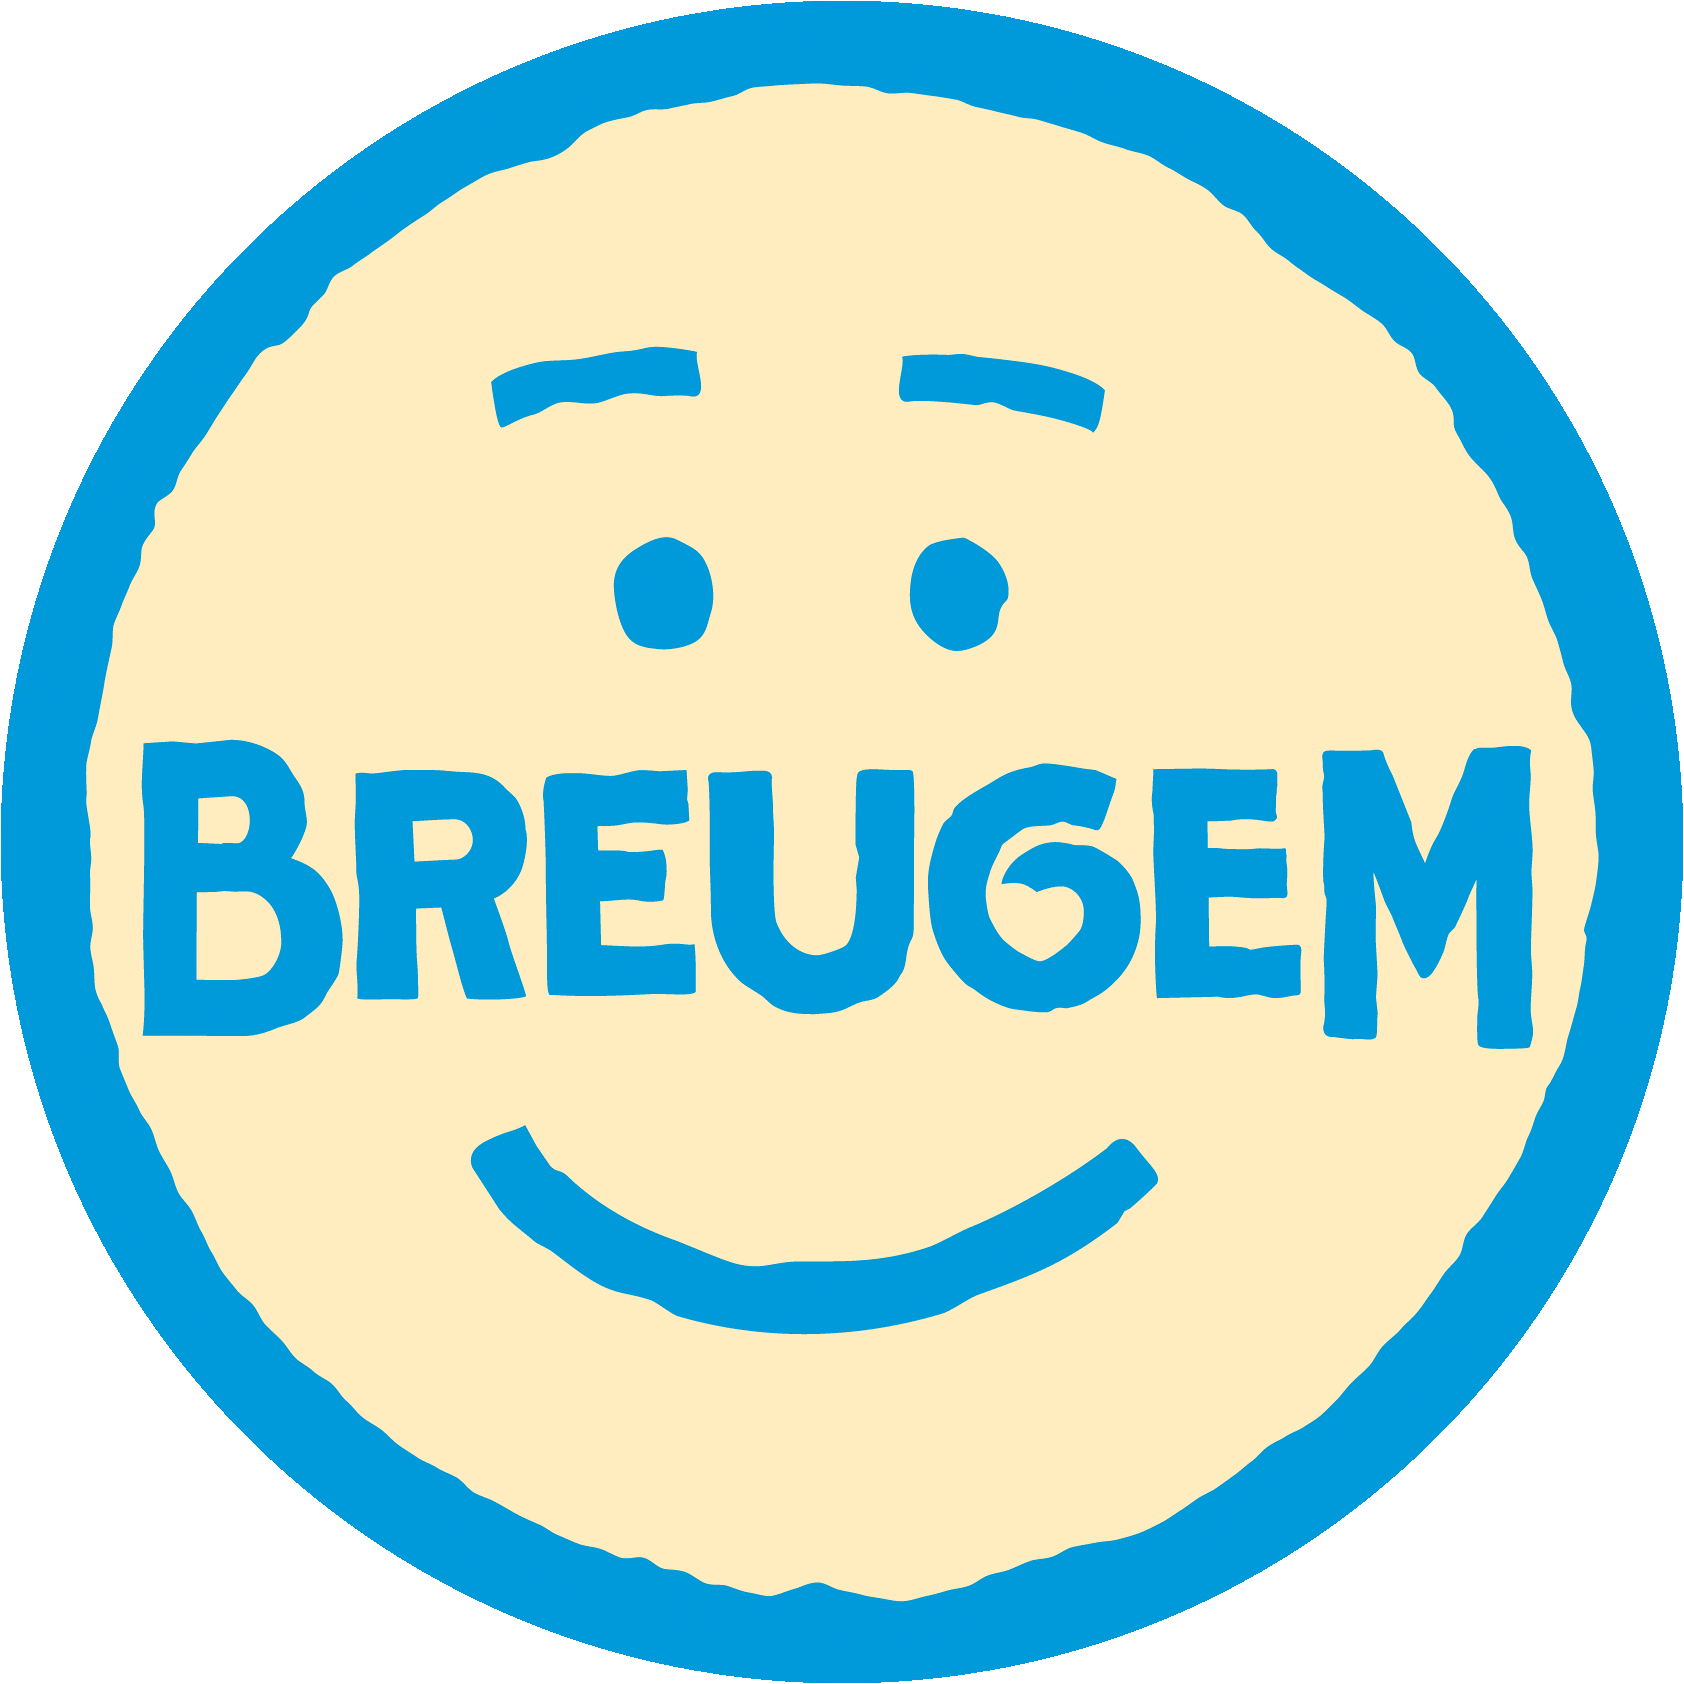 Brouwerij Breugem